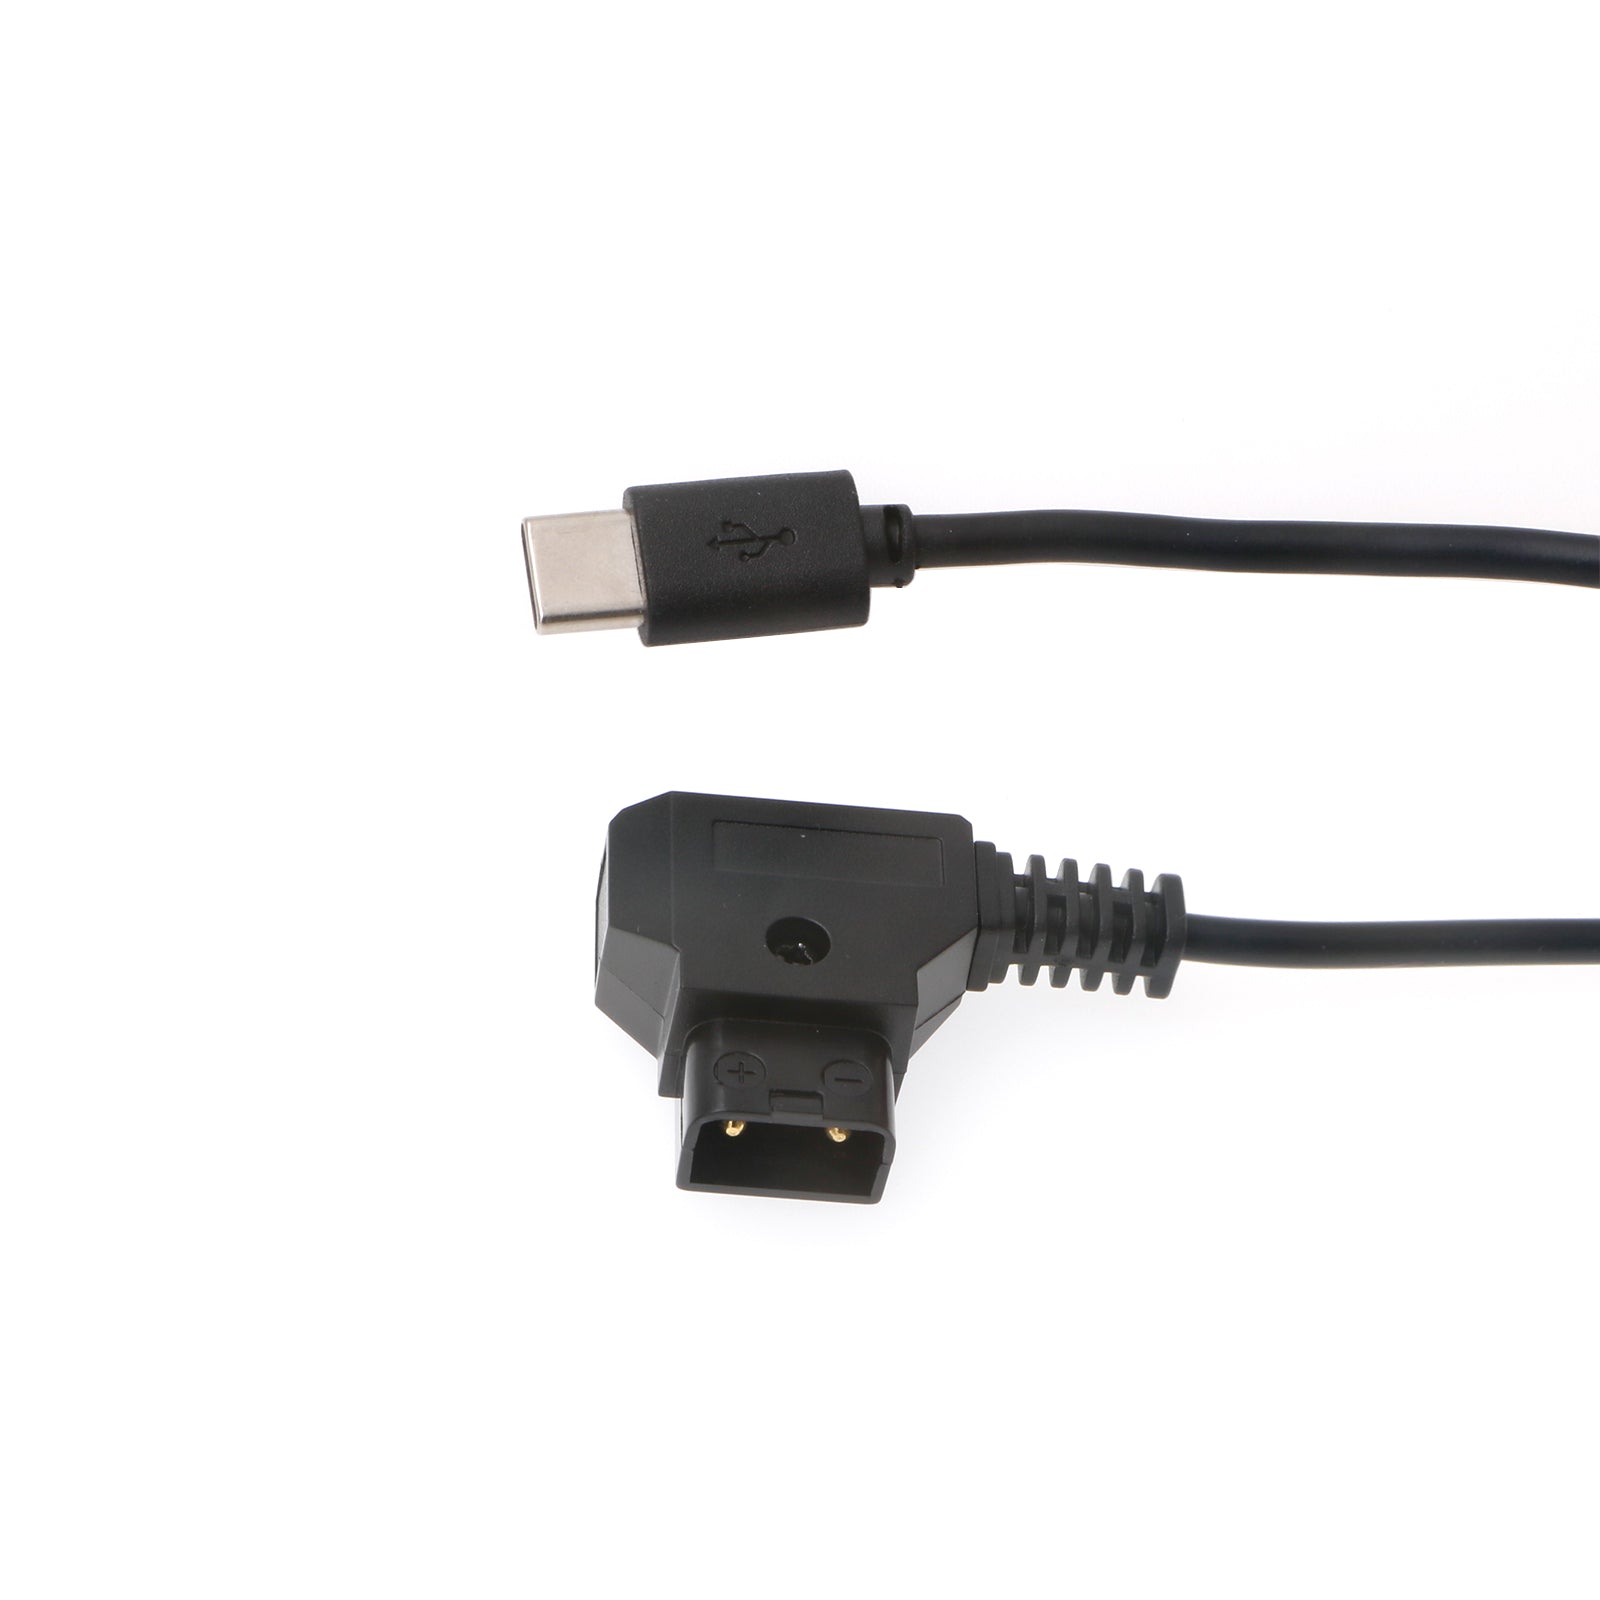 USB-C 5V 2A Stromkabel für Blackmagic Design Micro Converter D-Tap auf Type-C Kabel Alvin’s Cables 60cm|24inch